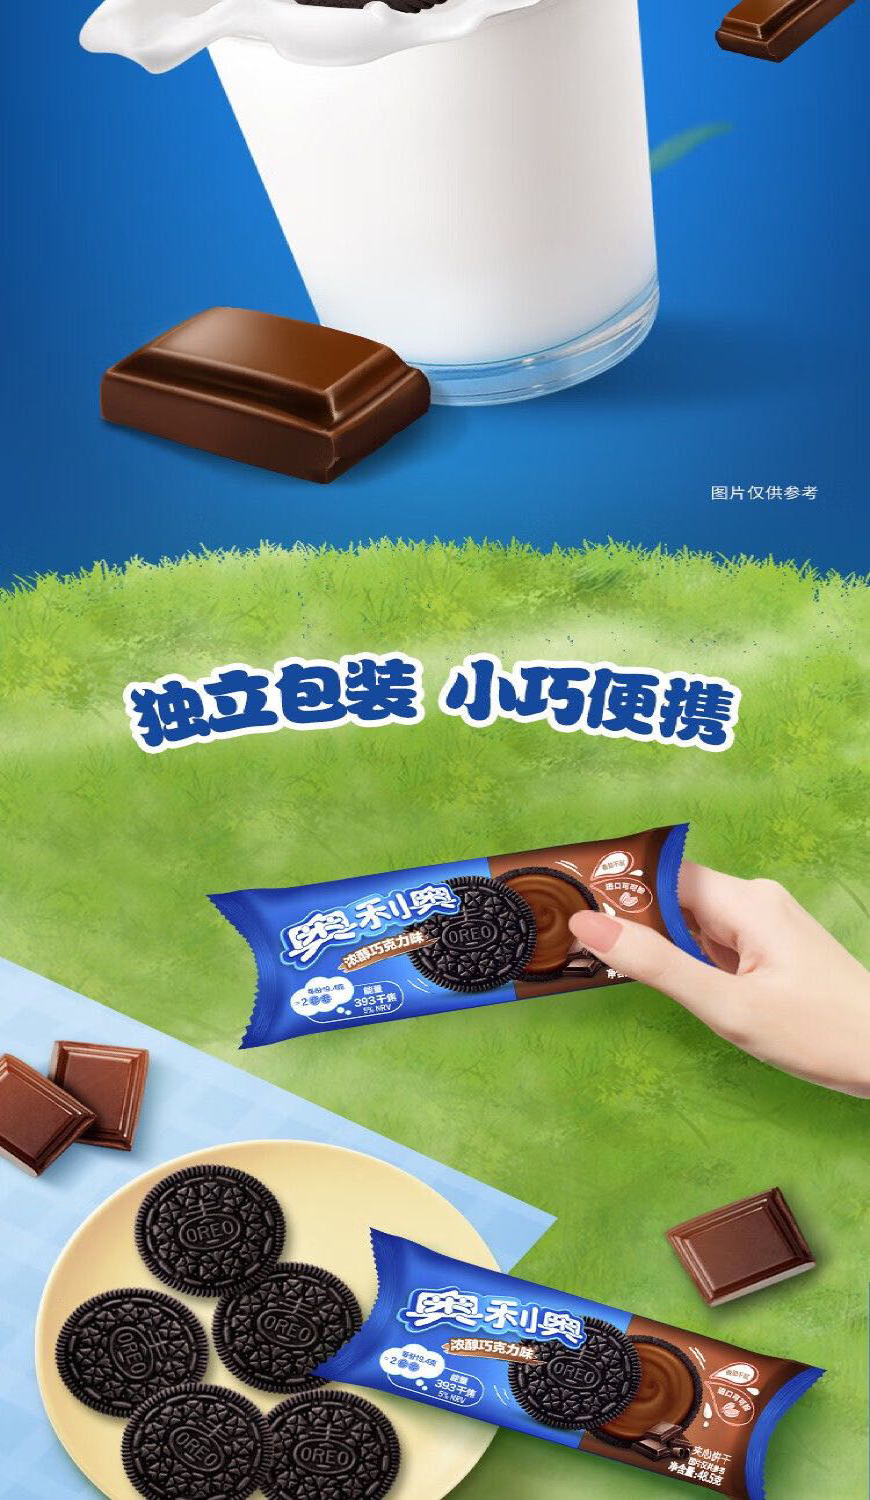 奥利奥巧克力味饼干详情页4.jpg